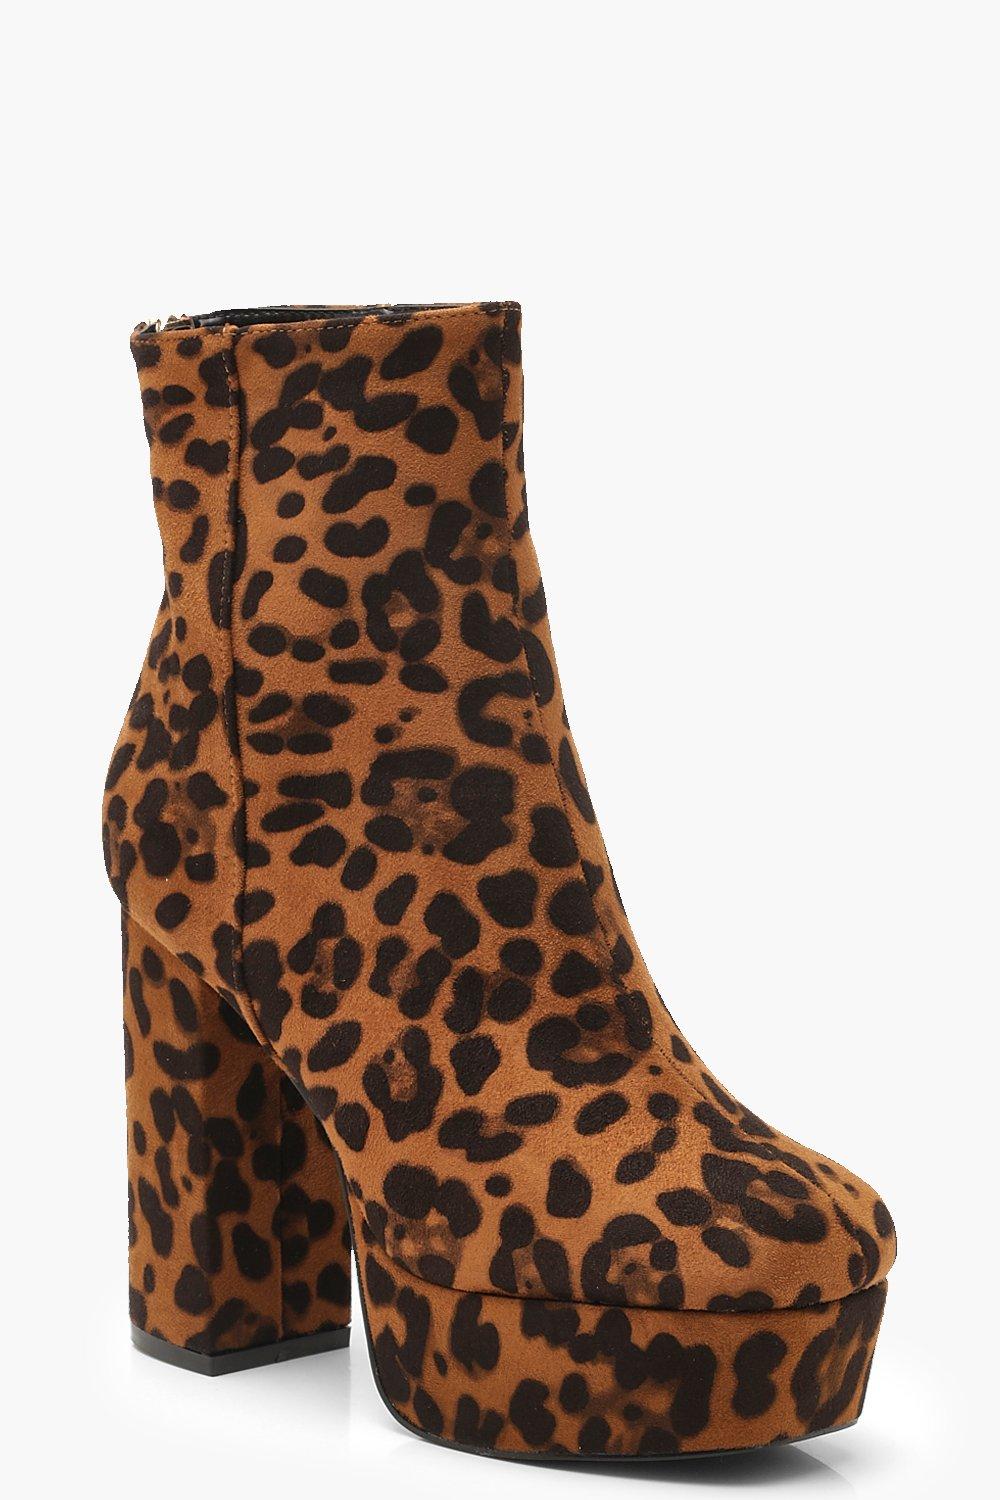 boohoo leopard boots